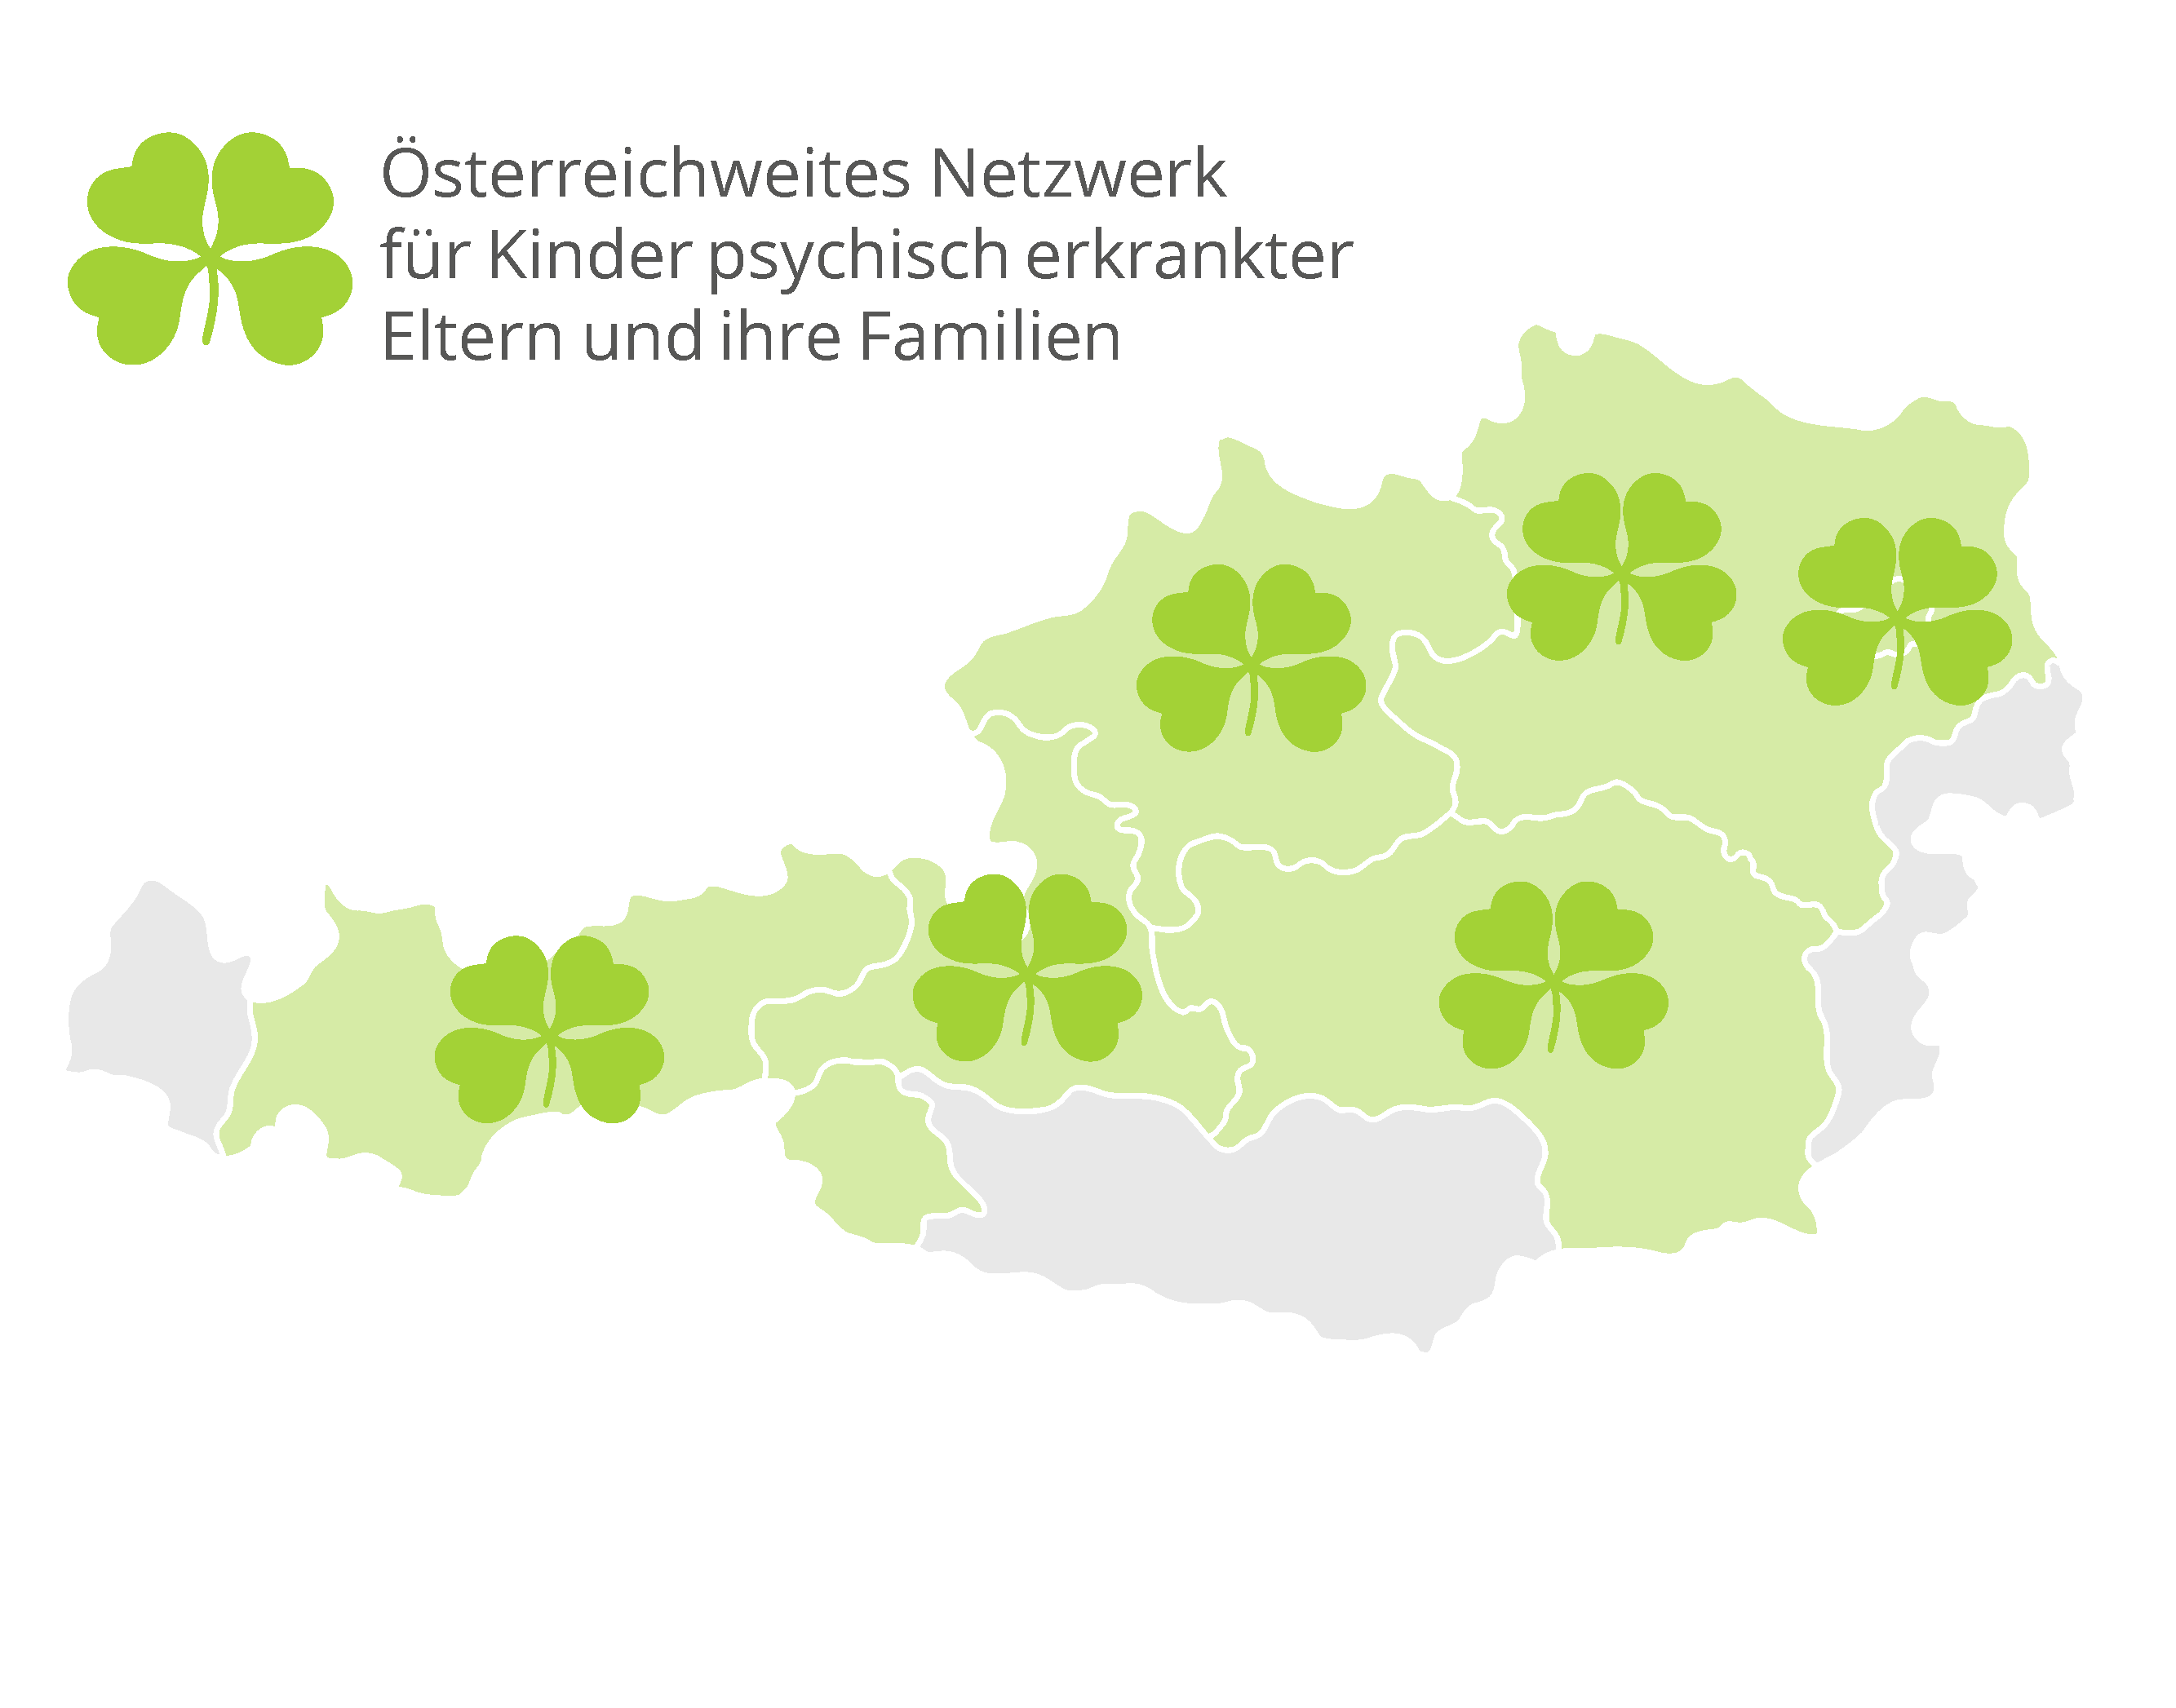 Landkarte von Österreich mit Kleeblatt-Logos in den Bundesländern, wo es Angebote aus dem KIPKE Netzwerk gibt.